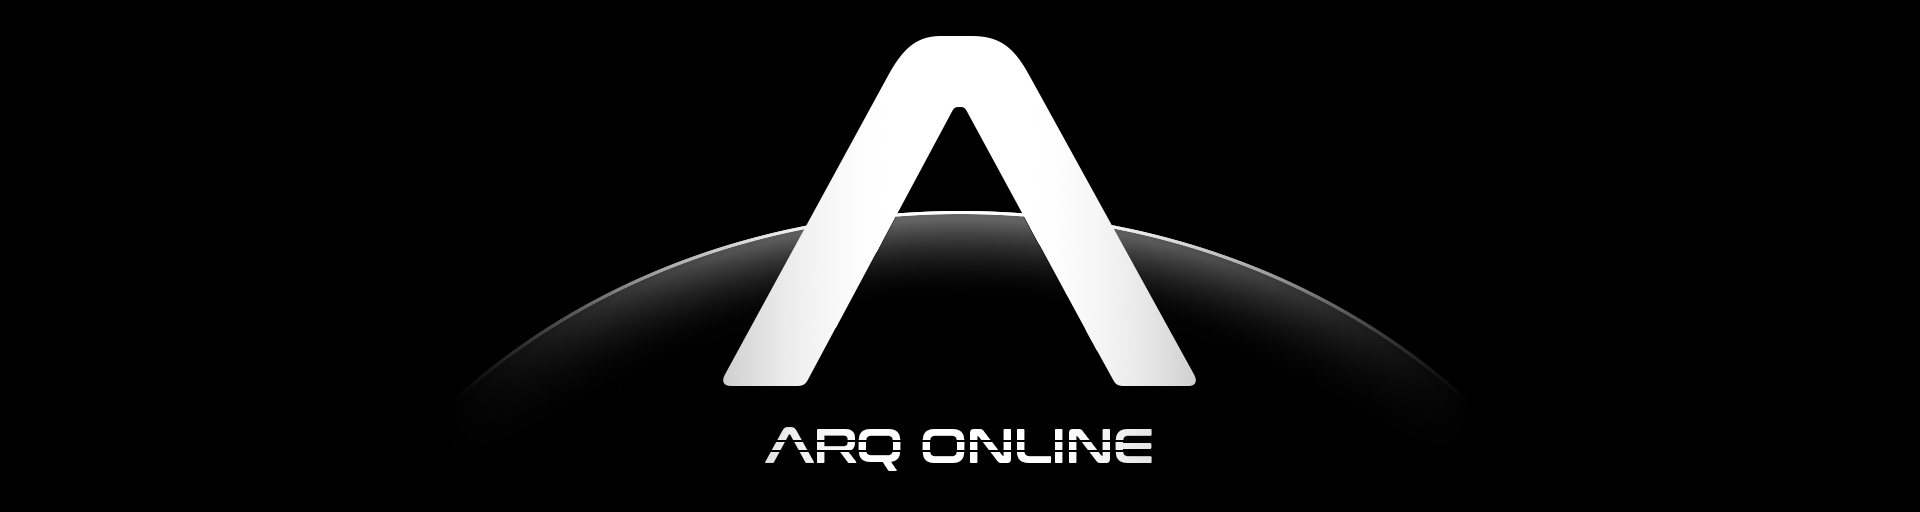 Arq Online